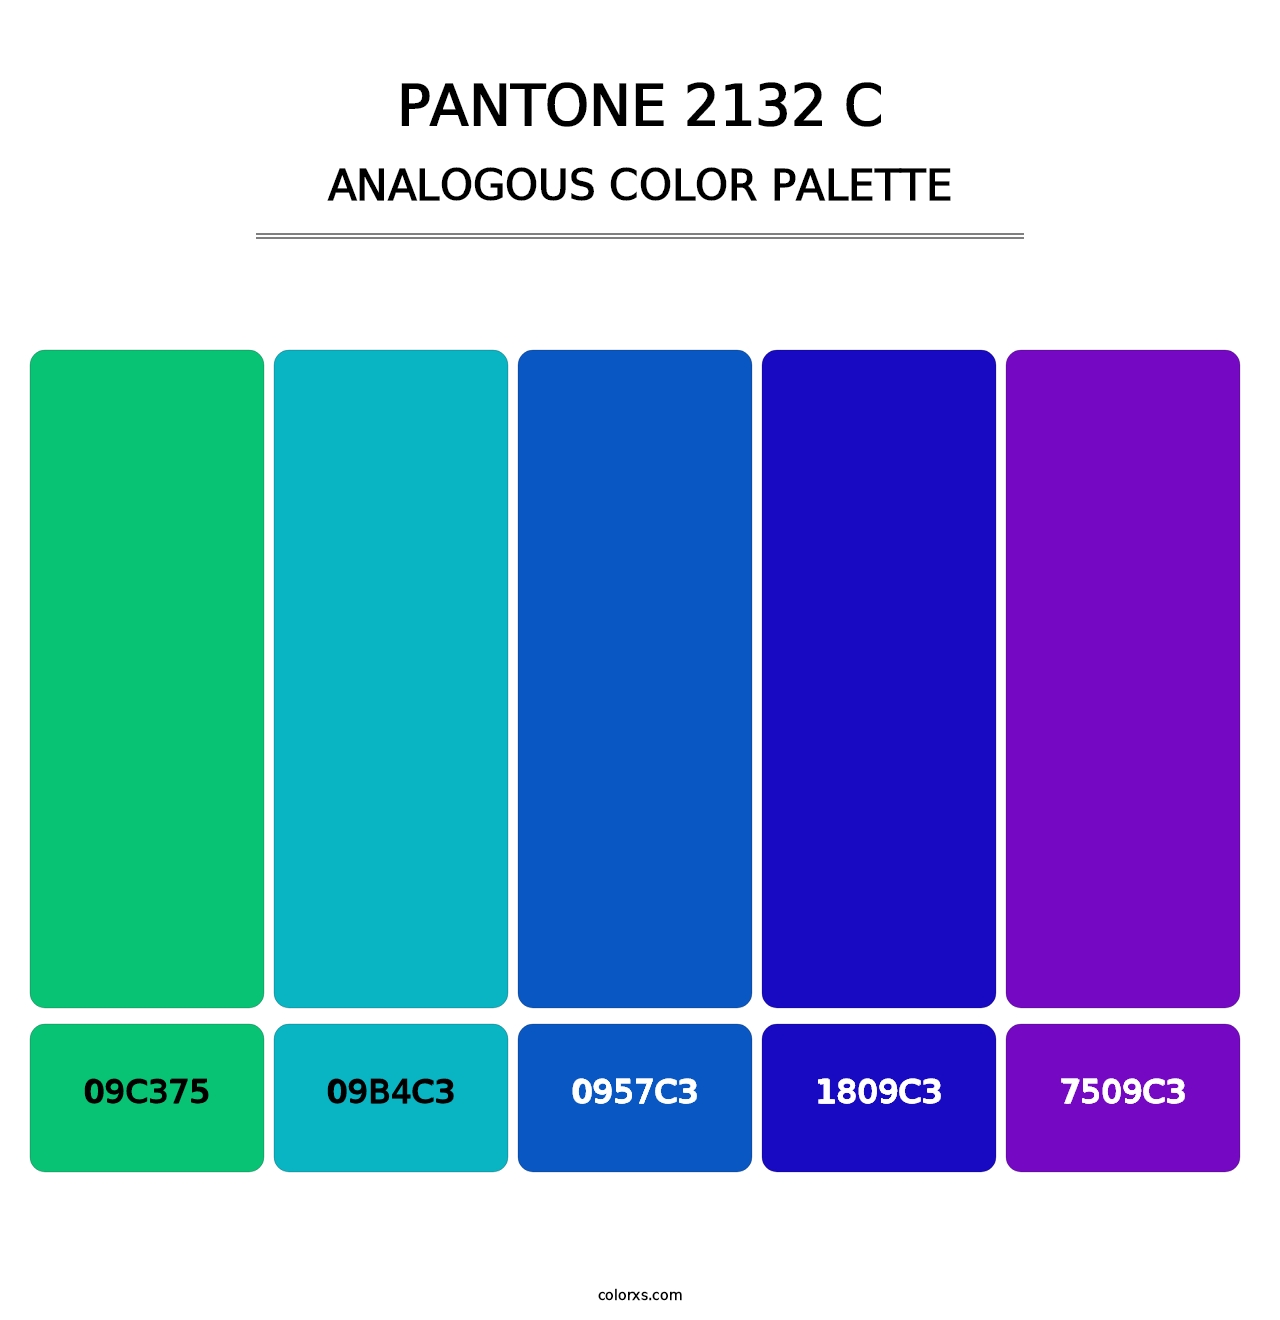 PANTONE 2132 C - Analogous Color Palette